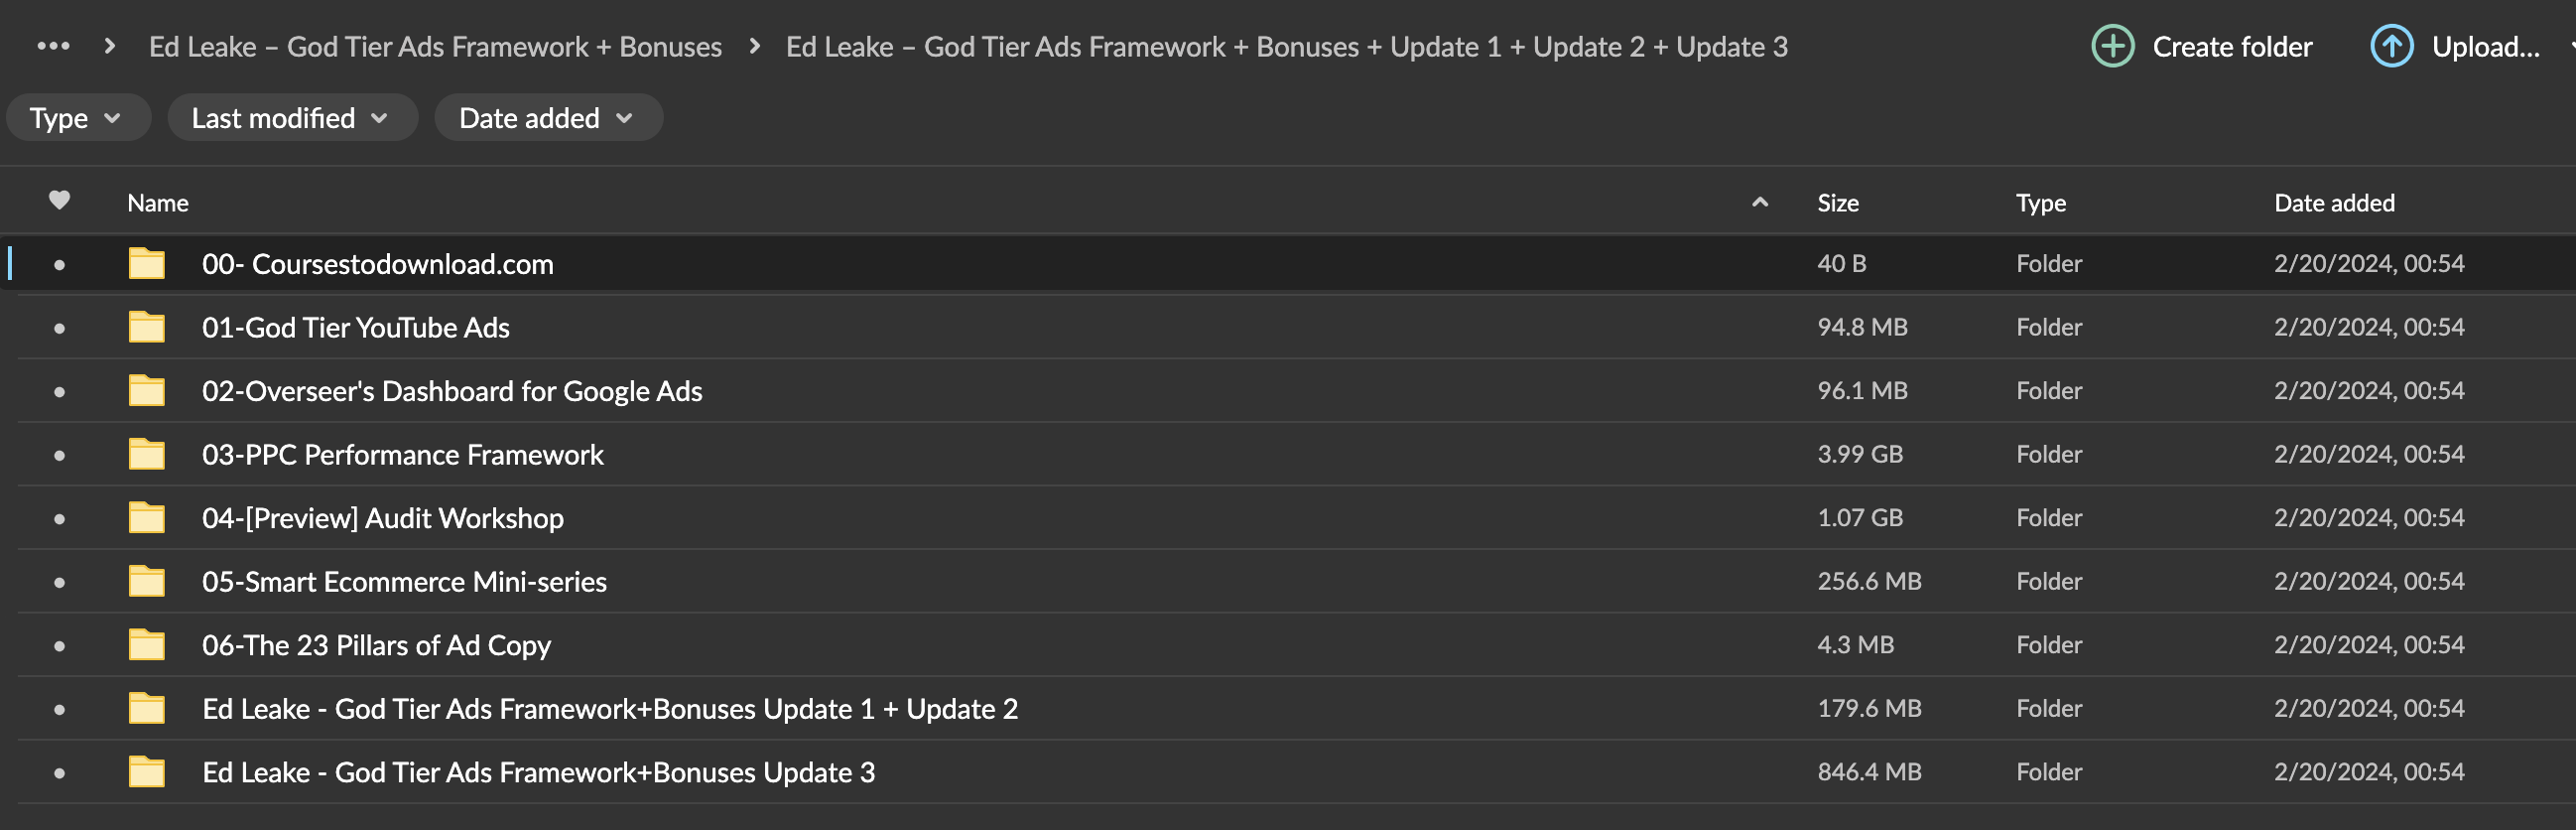 Ed Leake – God Tier Ads Framework + Bonuses Download